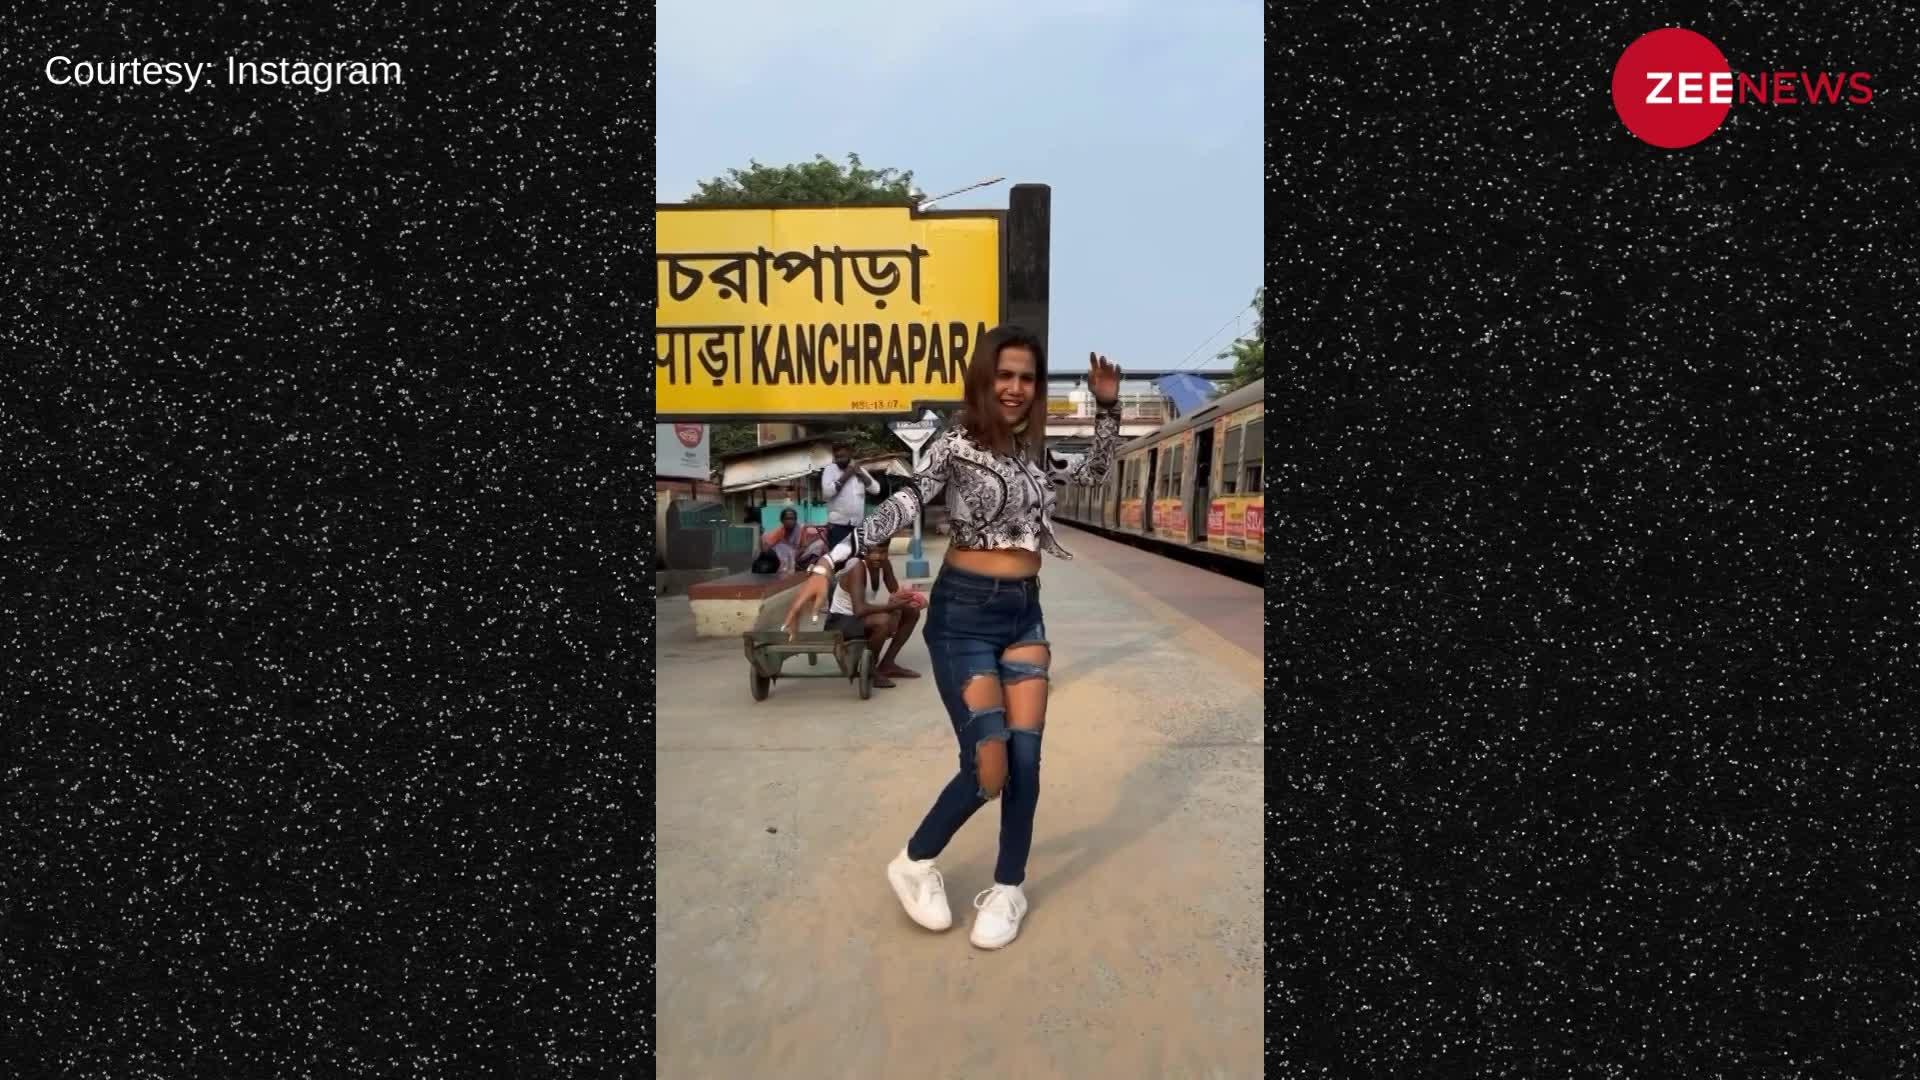 अक्षय कुमार के गाने 'कह दो न ओ सनम' पर रेलवे स्टेशन पर नाची लड़की, देख ठनक गया लोगों का माथा